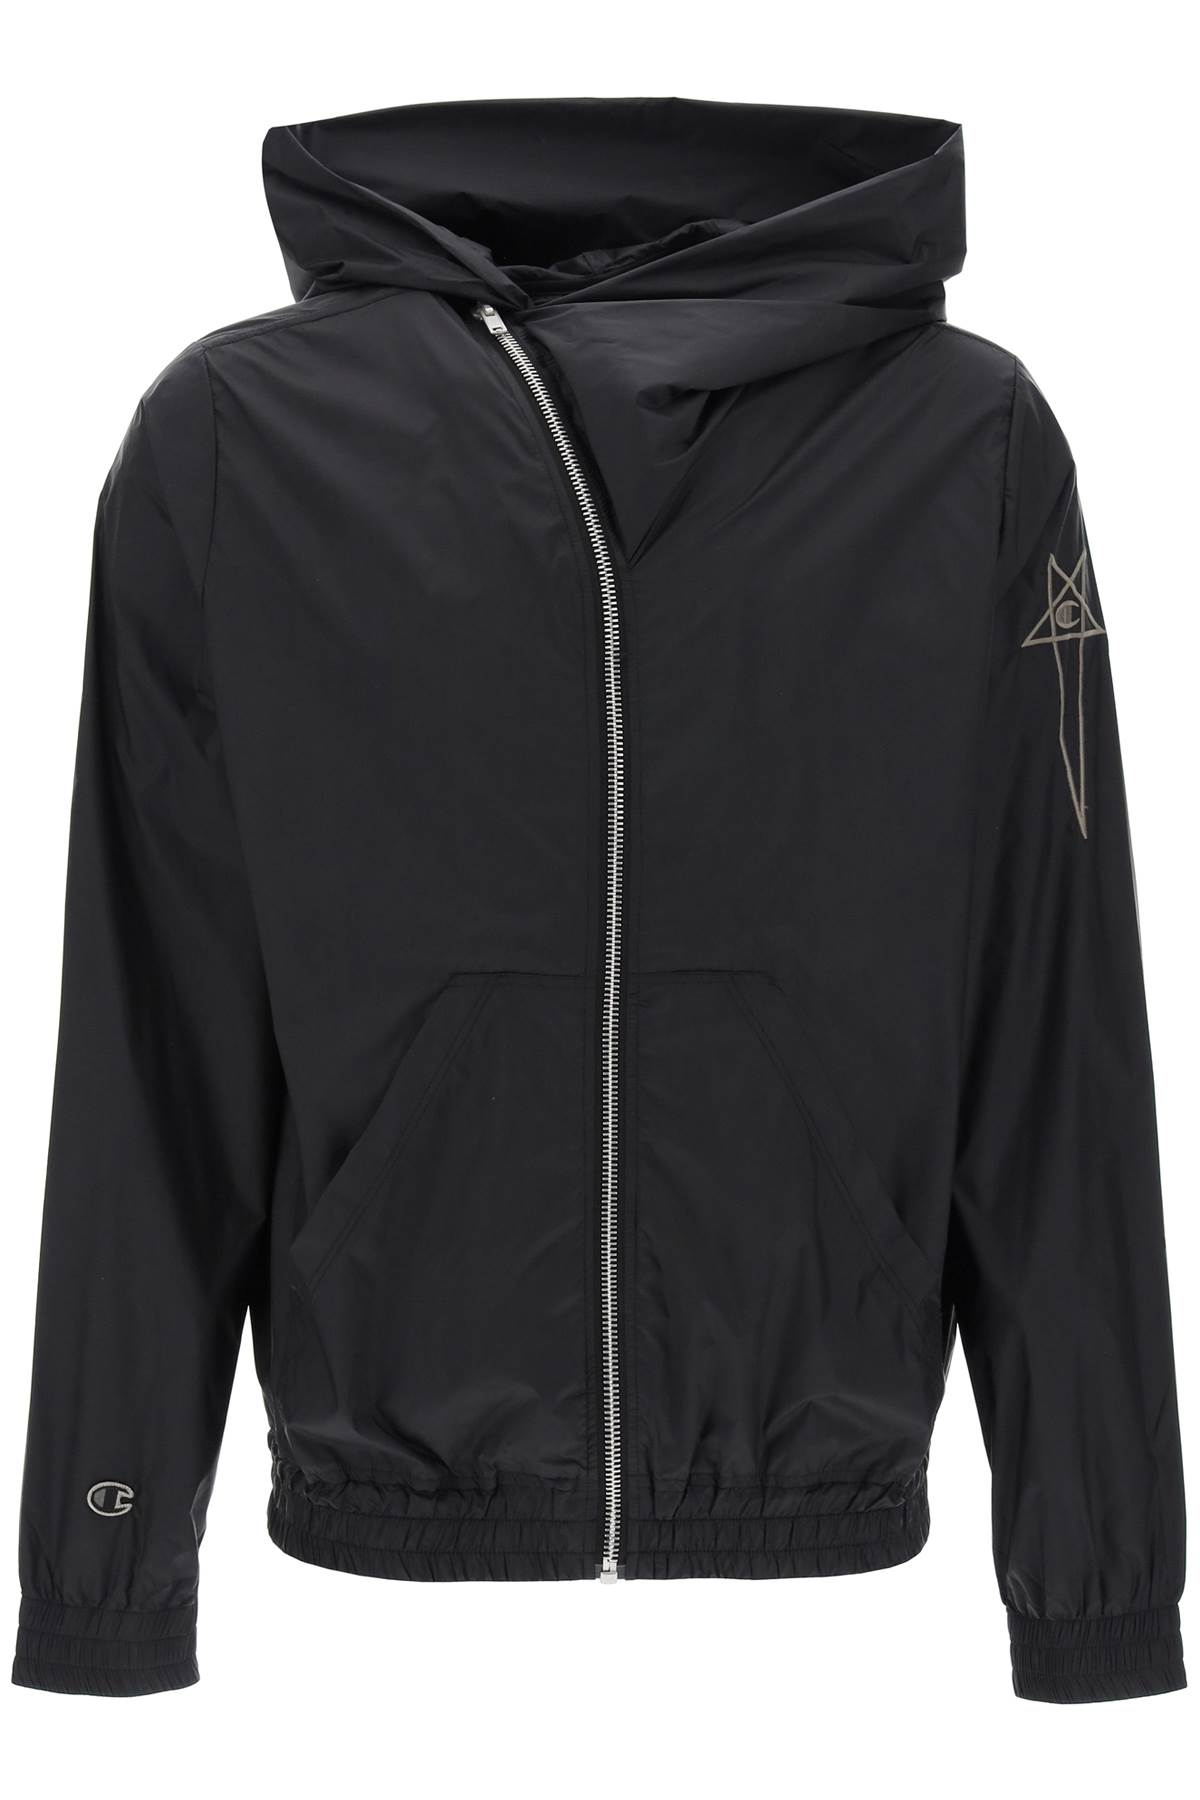 Rick Owens X Champion Mountain Hoodie Windbreaker Jacket In Nylon In Black